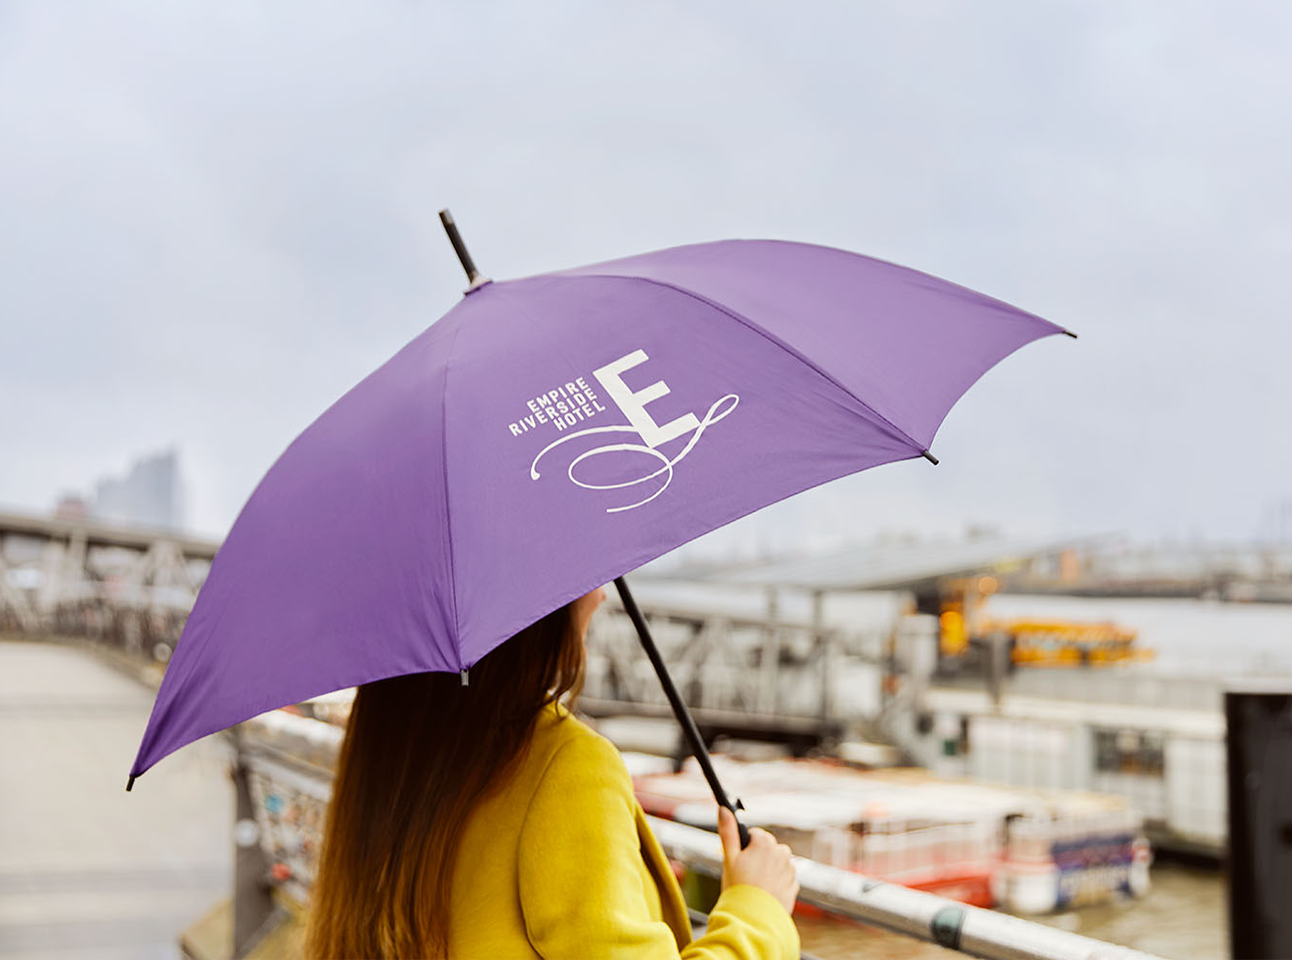 Regenschirm mit Logo